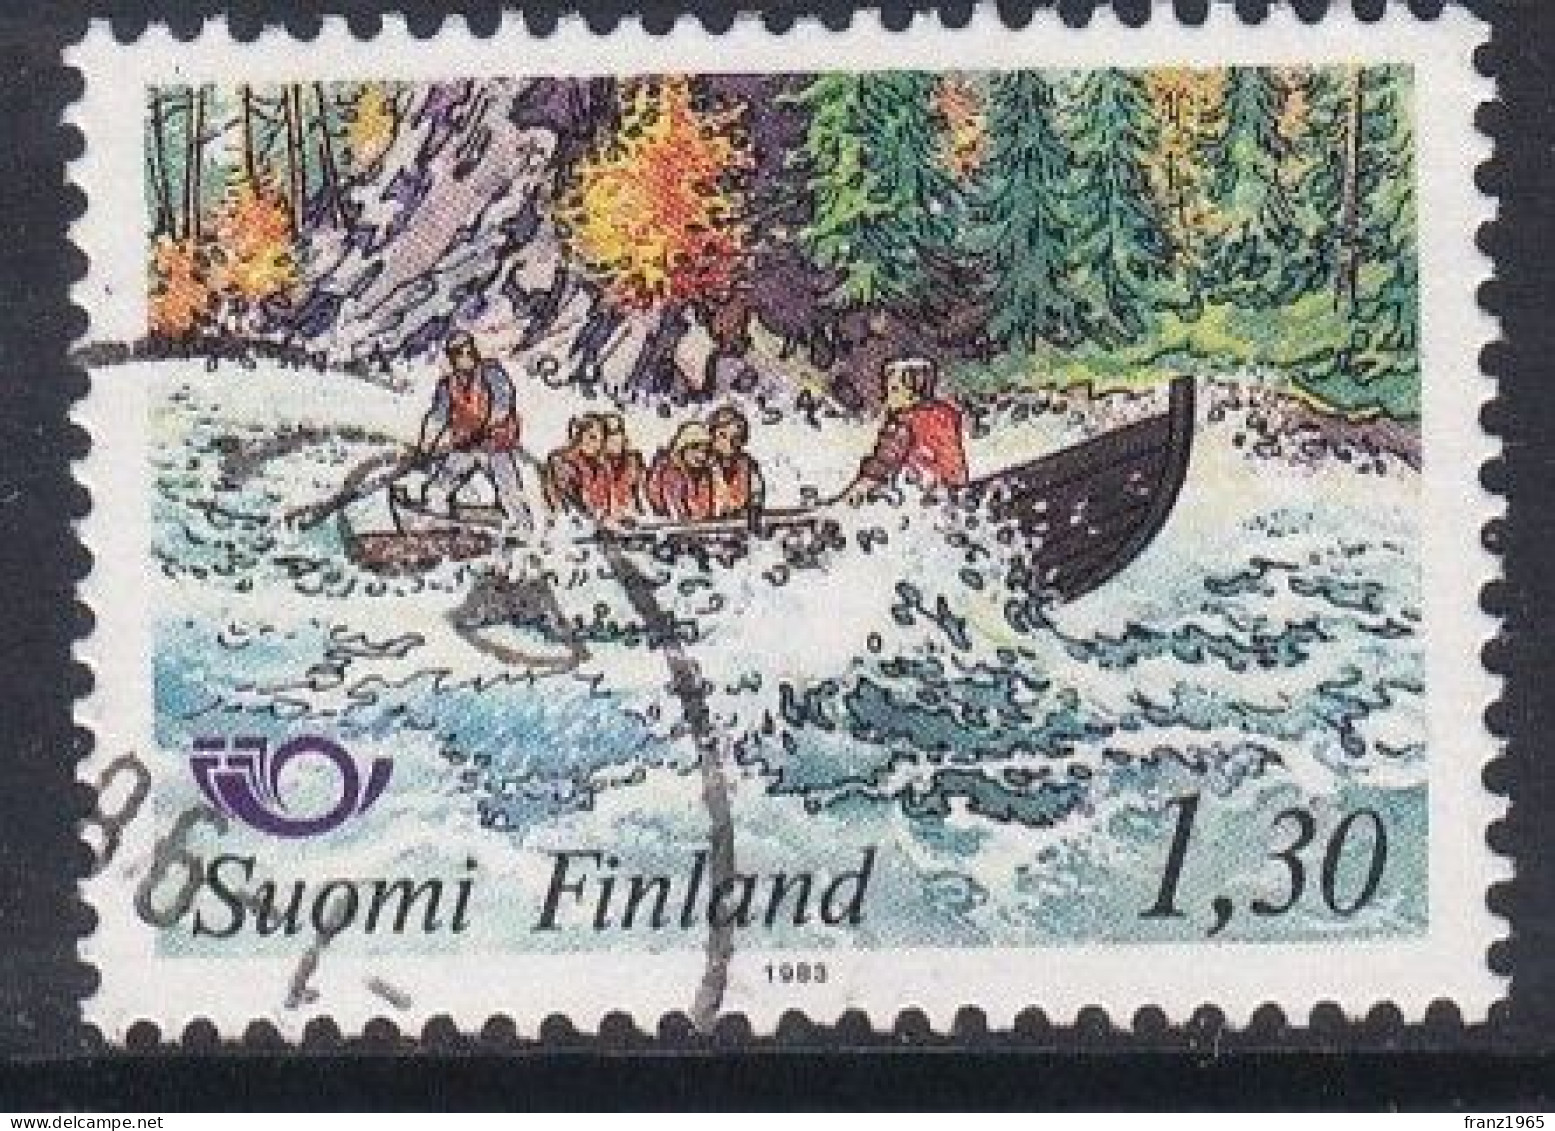 Norden, Tourism, River Trip On The Kitkajoki - 1983 - Used Stamps